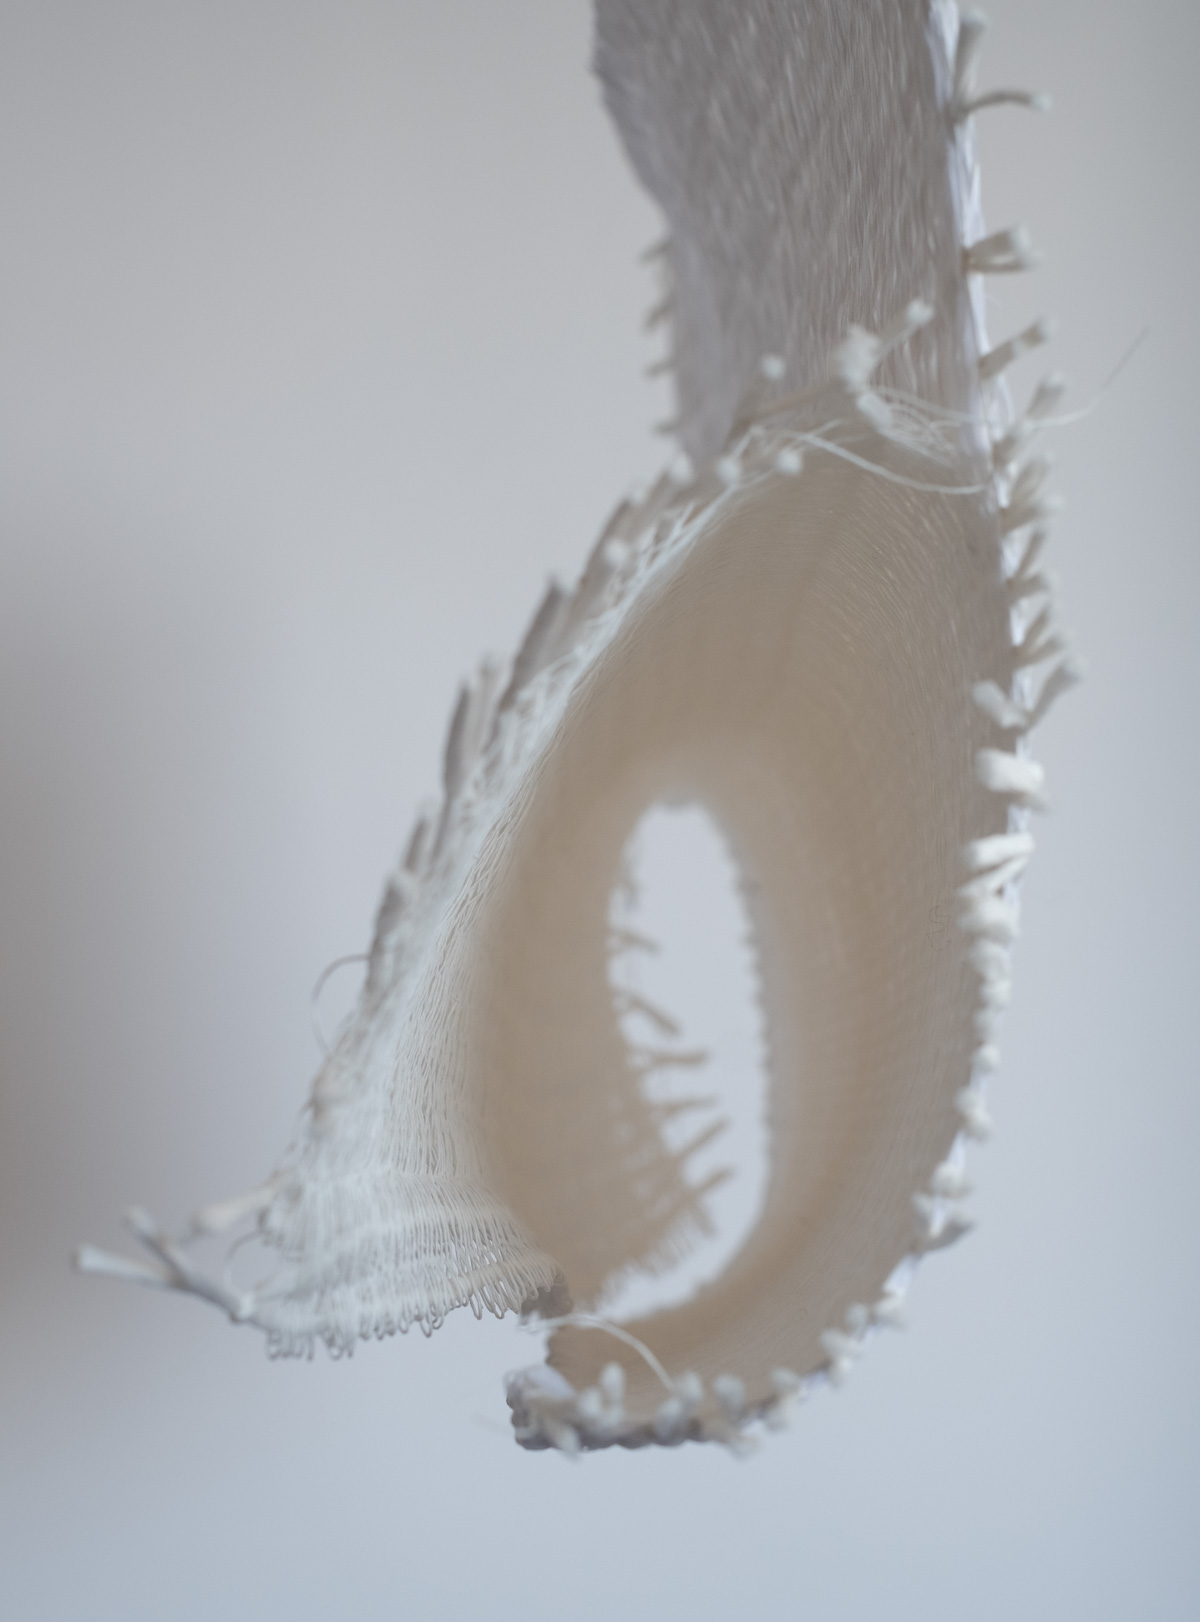 Duplice Svolta Bidirezionale (2020) 54x37x14 cm paper yarn